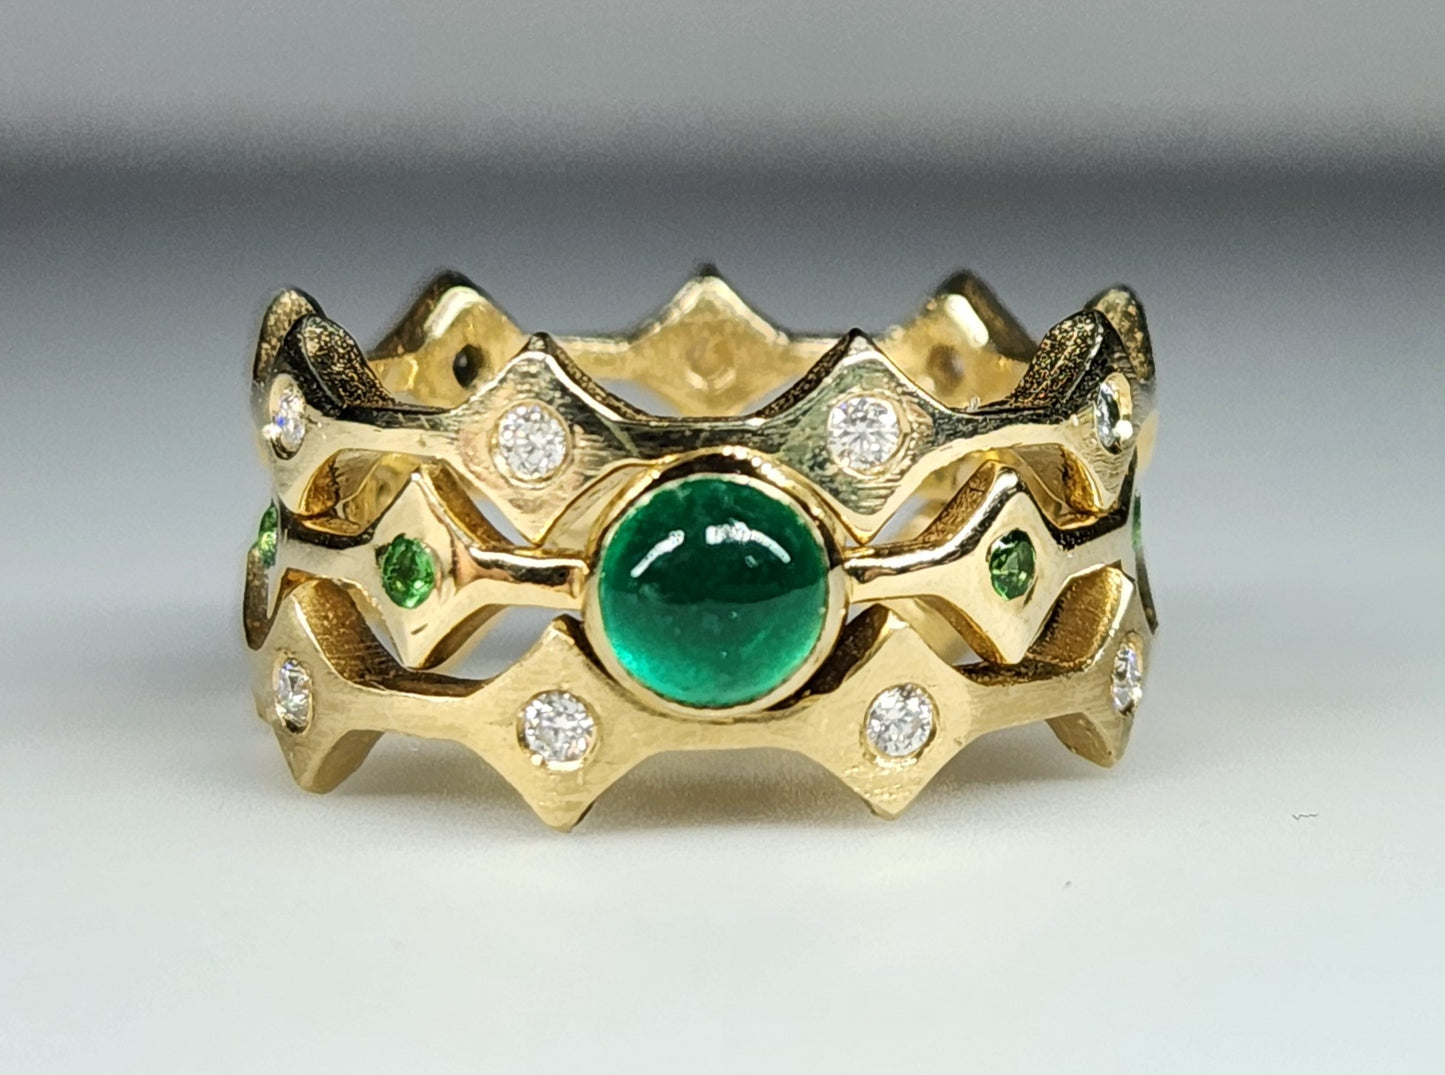 Emerald Stacking Ring 14k Yellow Gold - Handmade Jewelry #454